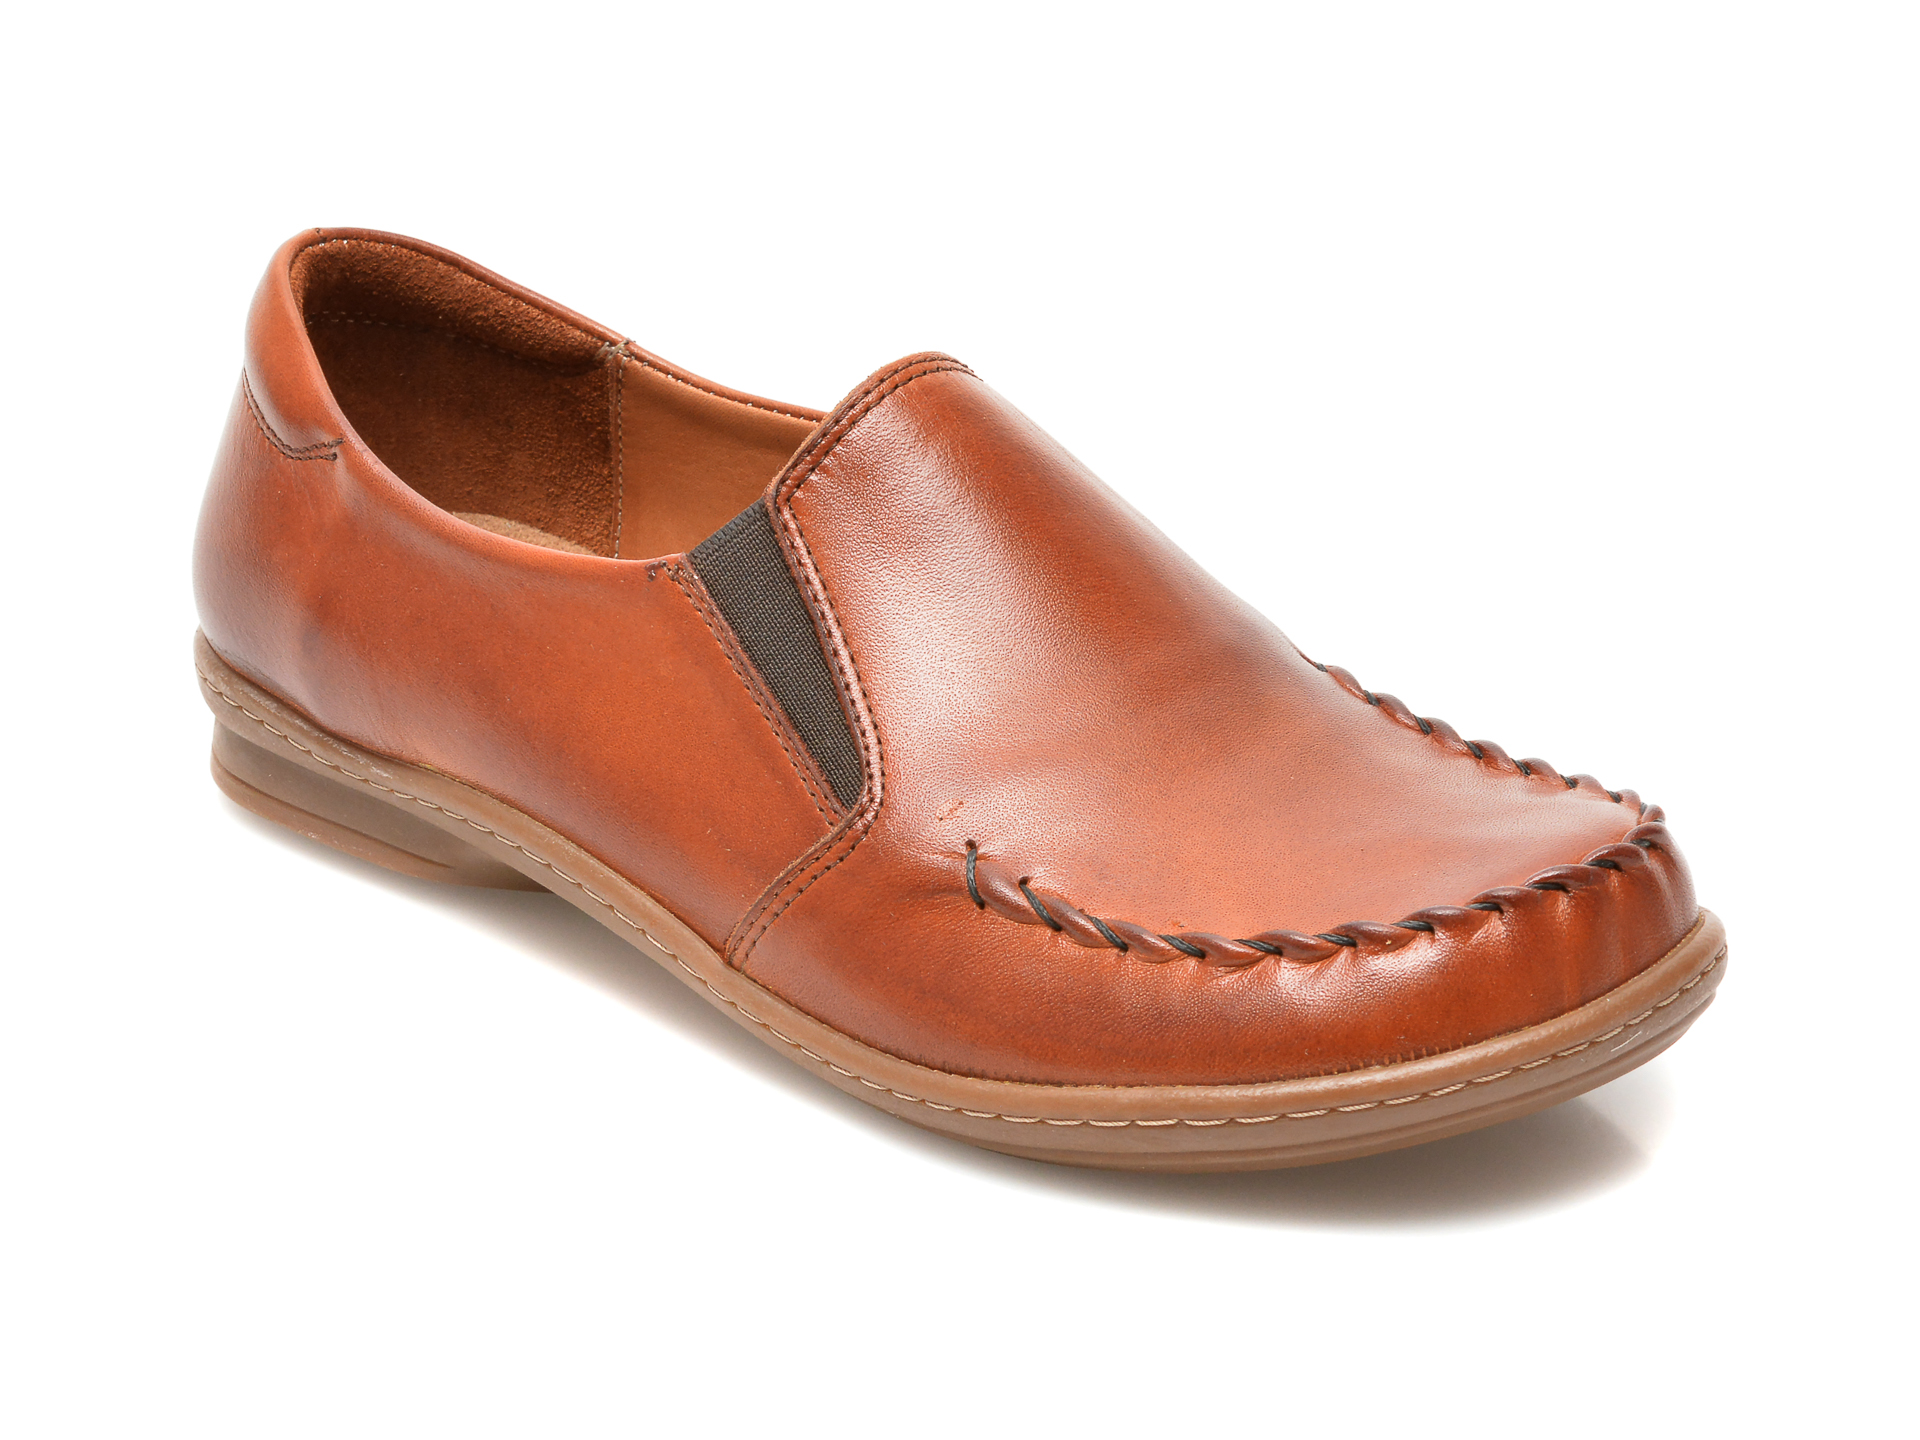 Pantofi FLAVIA PASSINI maro, 3240, din piele naturala Flavia Passini